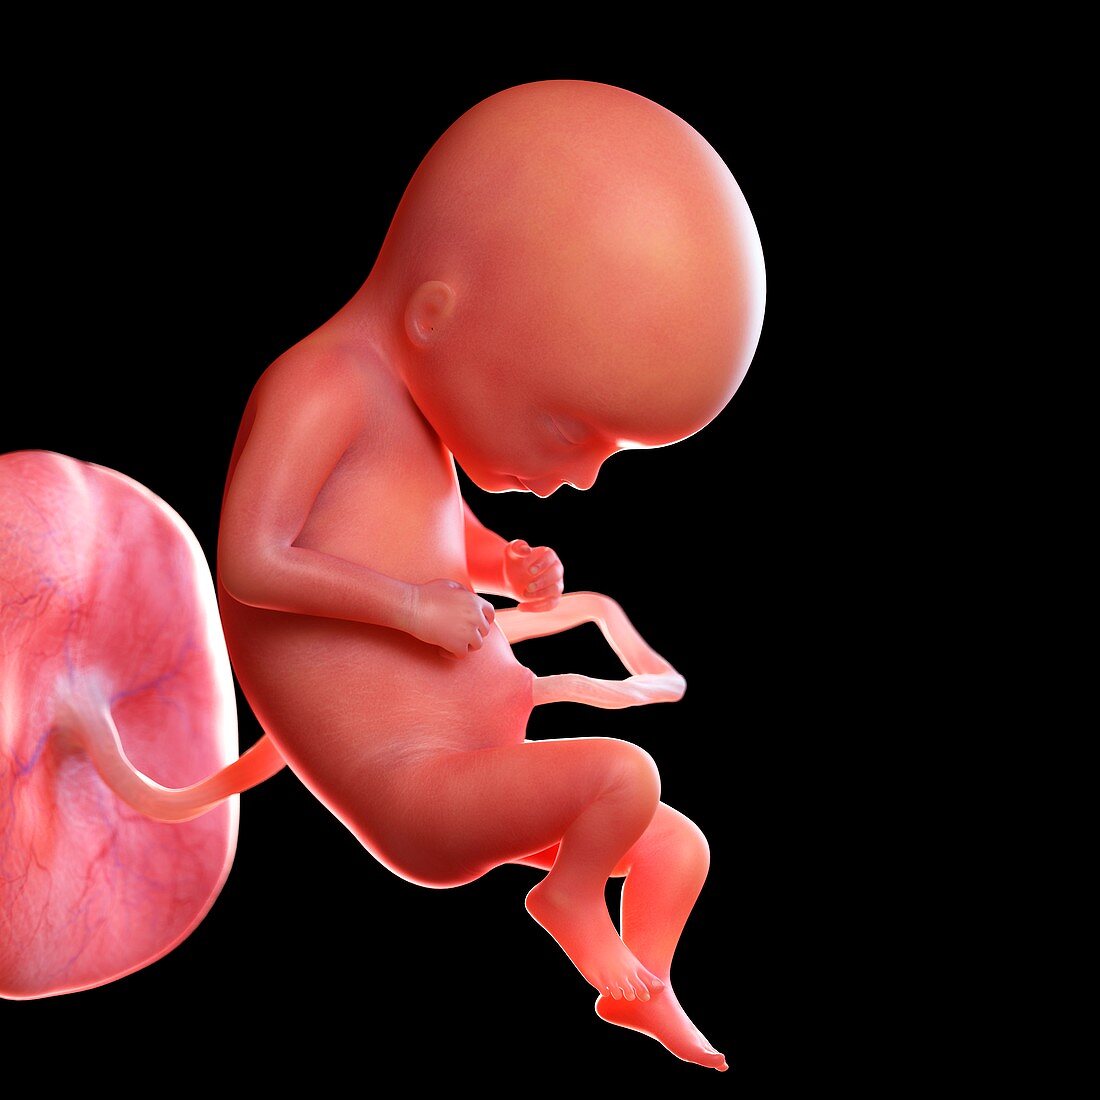 Human foetus age 17 weeks, illustration